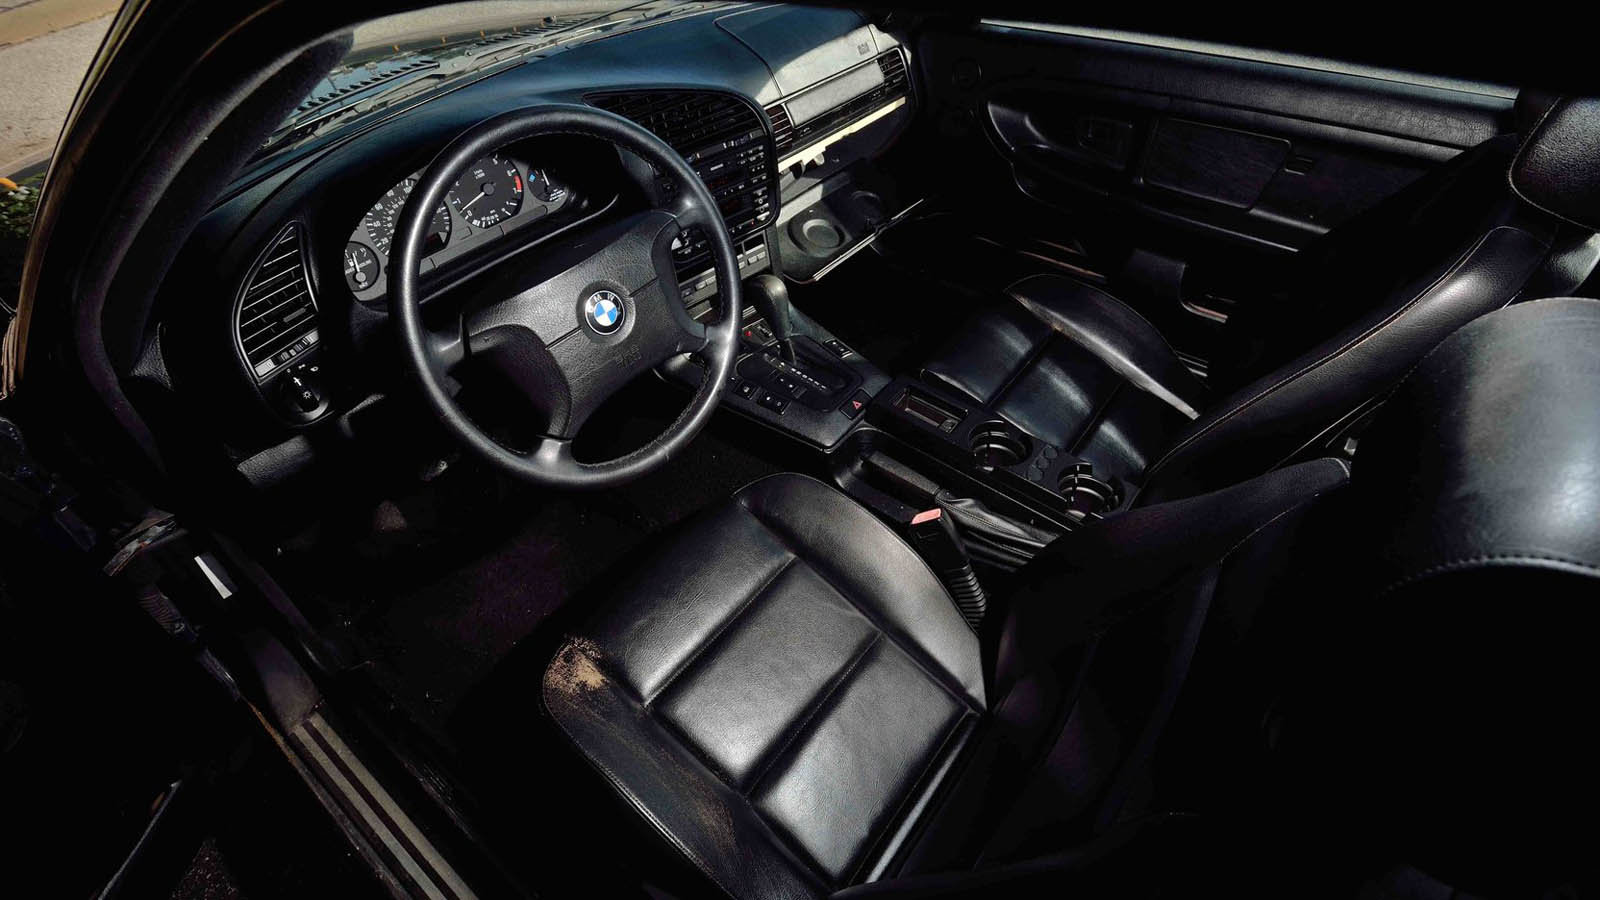 BMW e36 323iS použité během filmu Rychle a zběsile 2